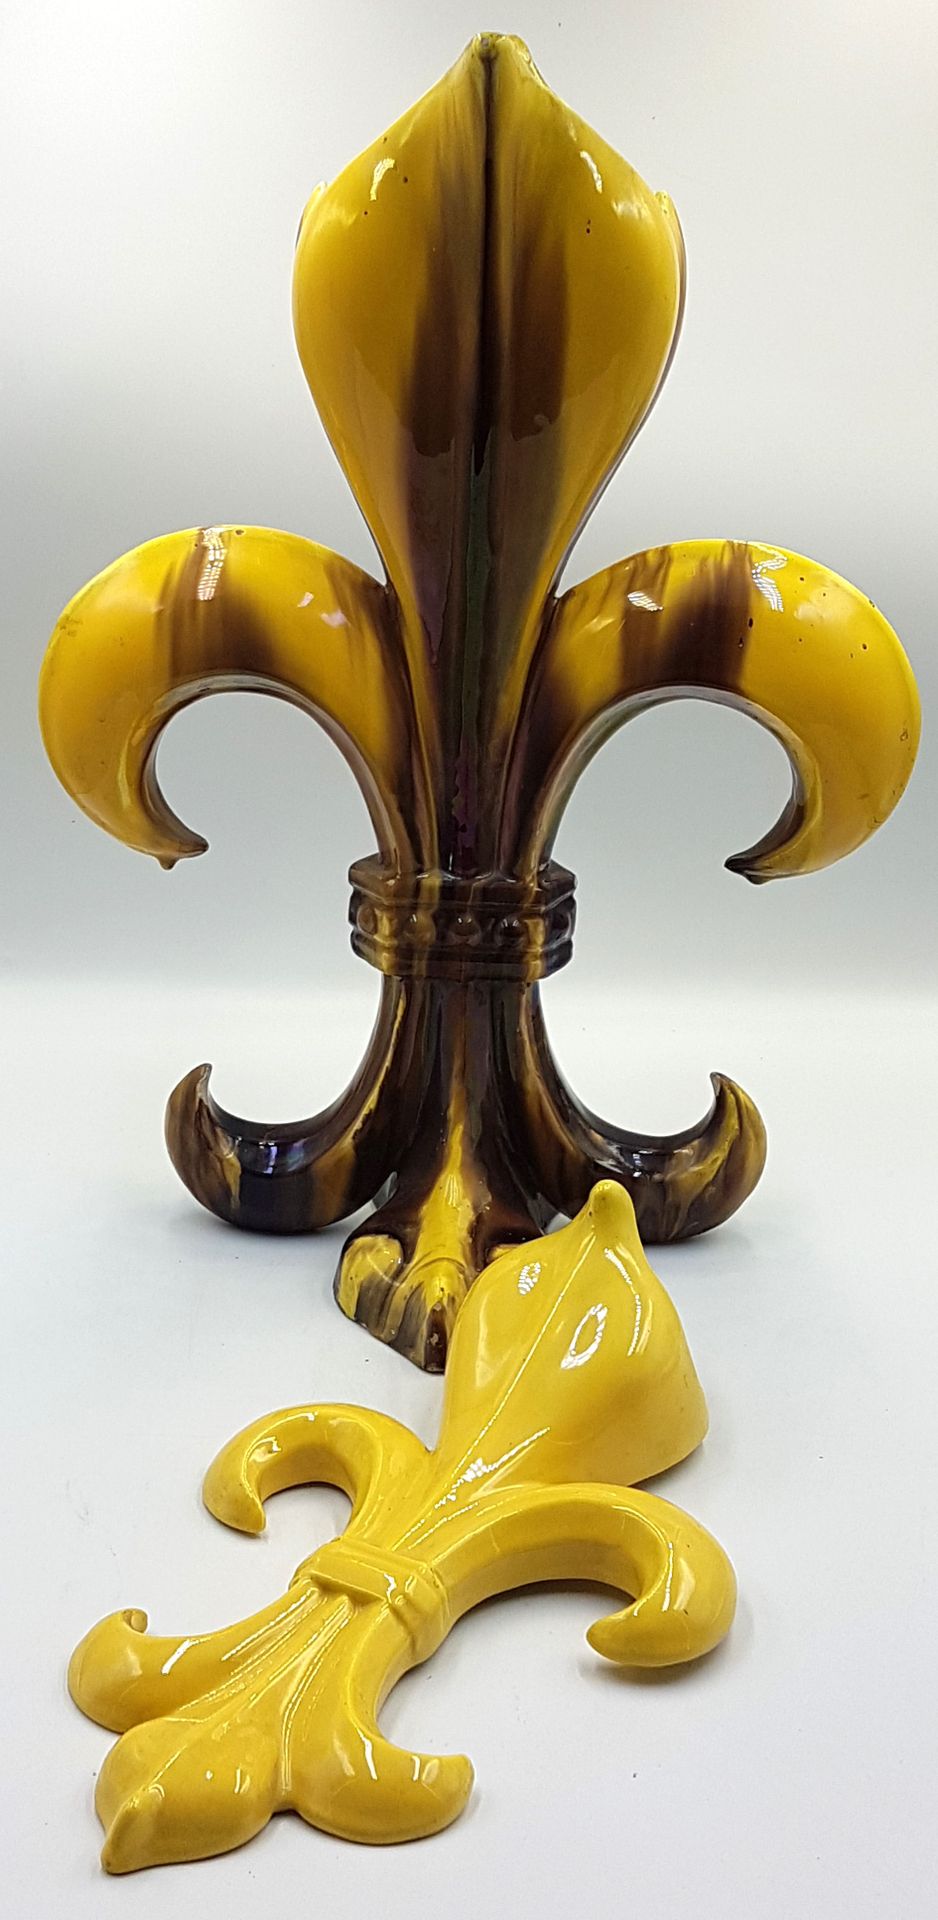 Null 以黄色和棕色为底色的百合花造型大陶器花瓶。高 44 厘米 
一个百合花造型的黄色陶制花束。高 28 厘米
(小碎片）